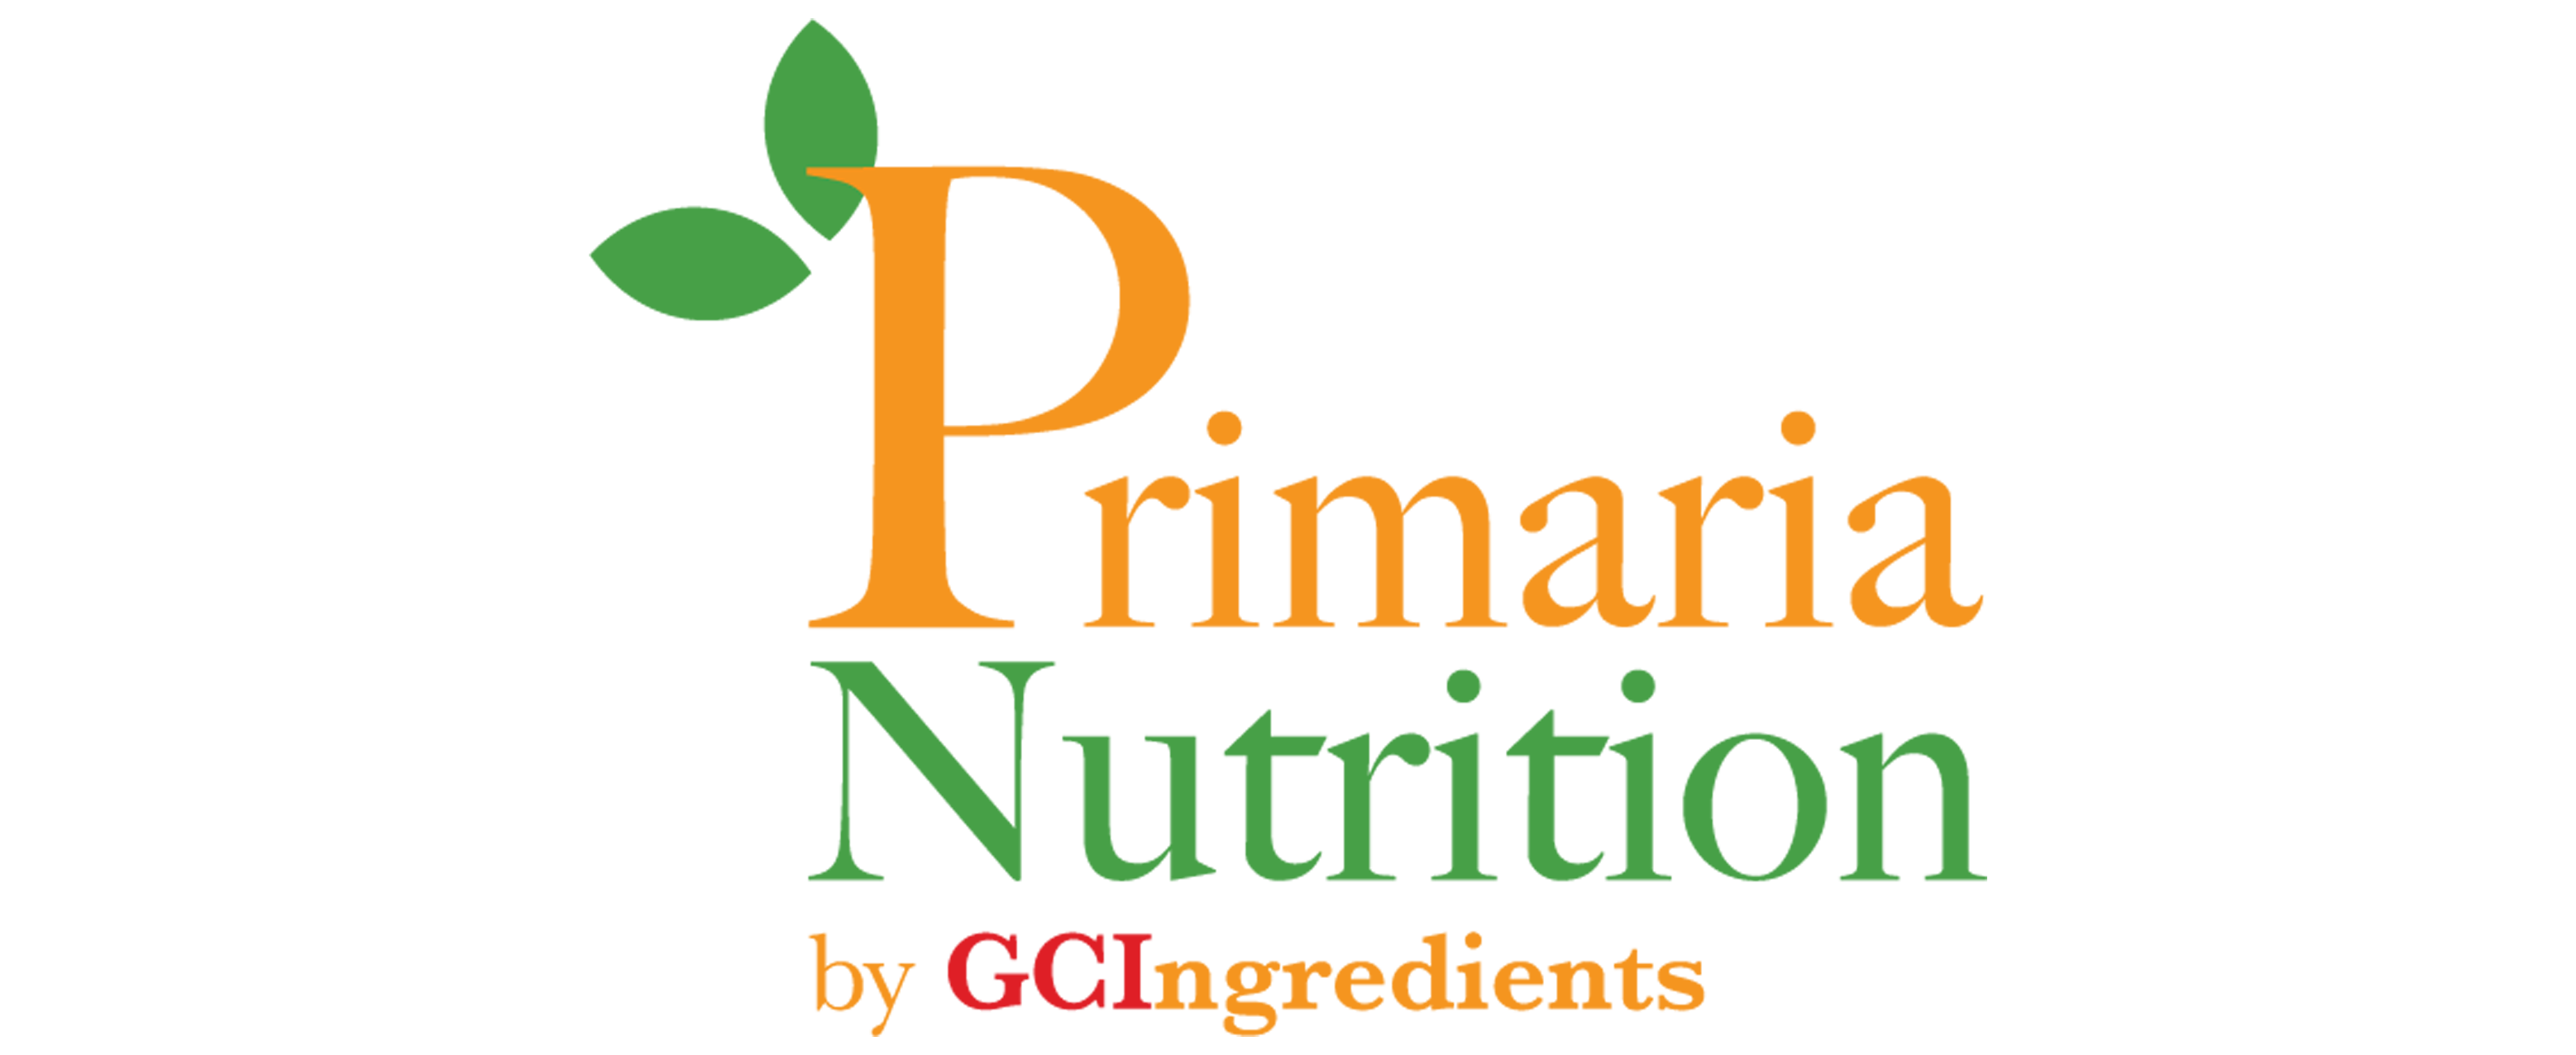 Primaria Nutrition by GCI